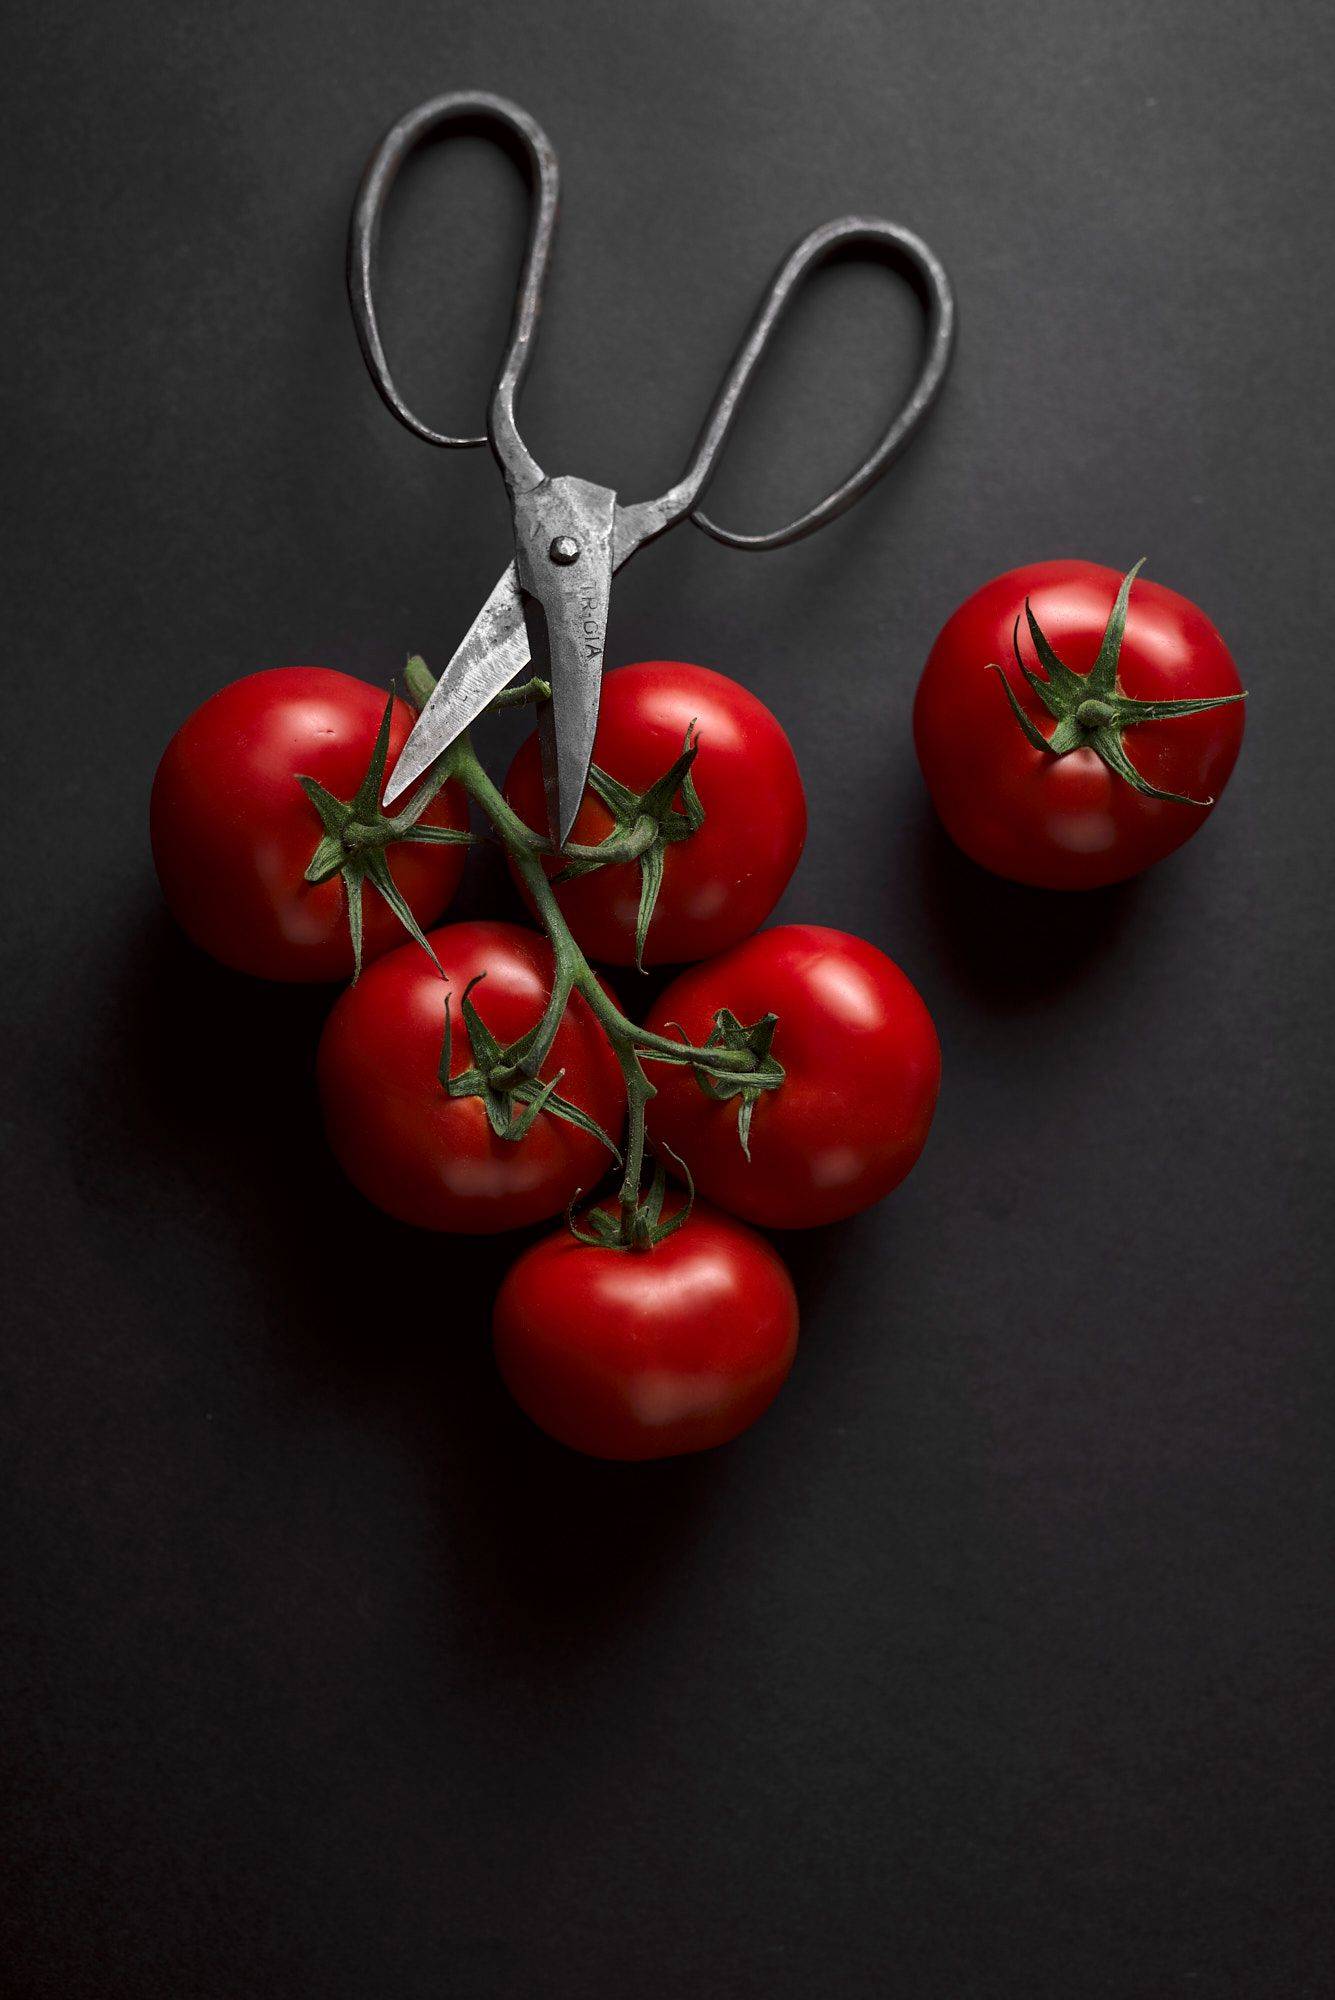 sechs reife rote tomaten mit einer alten schere mit schwarzem hintergrund